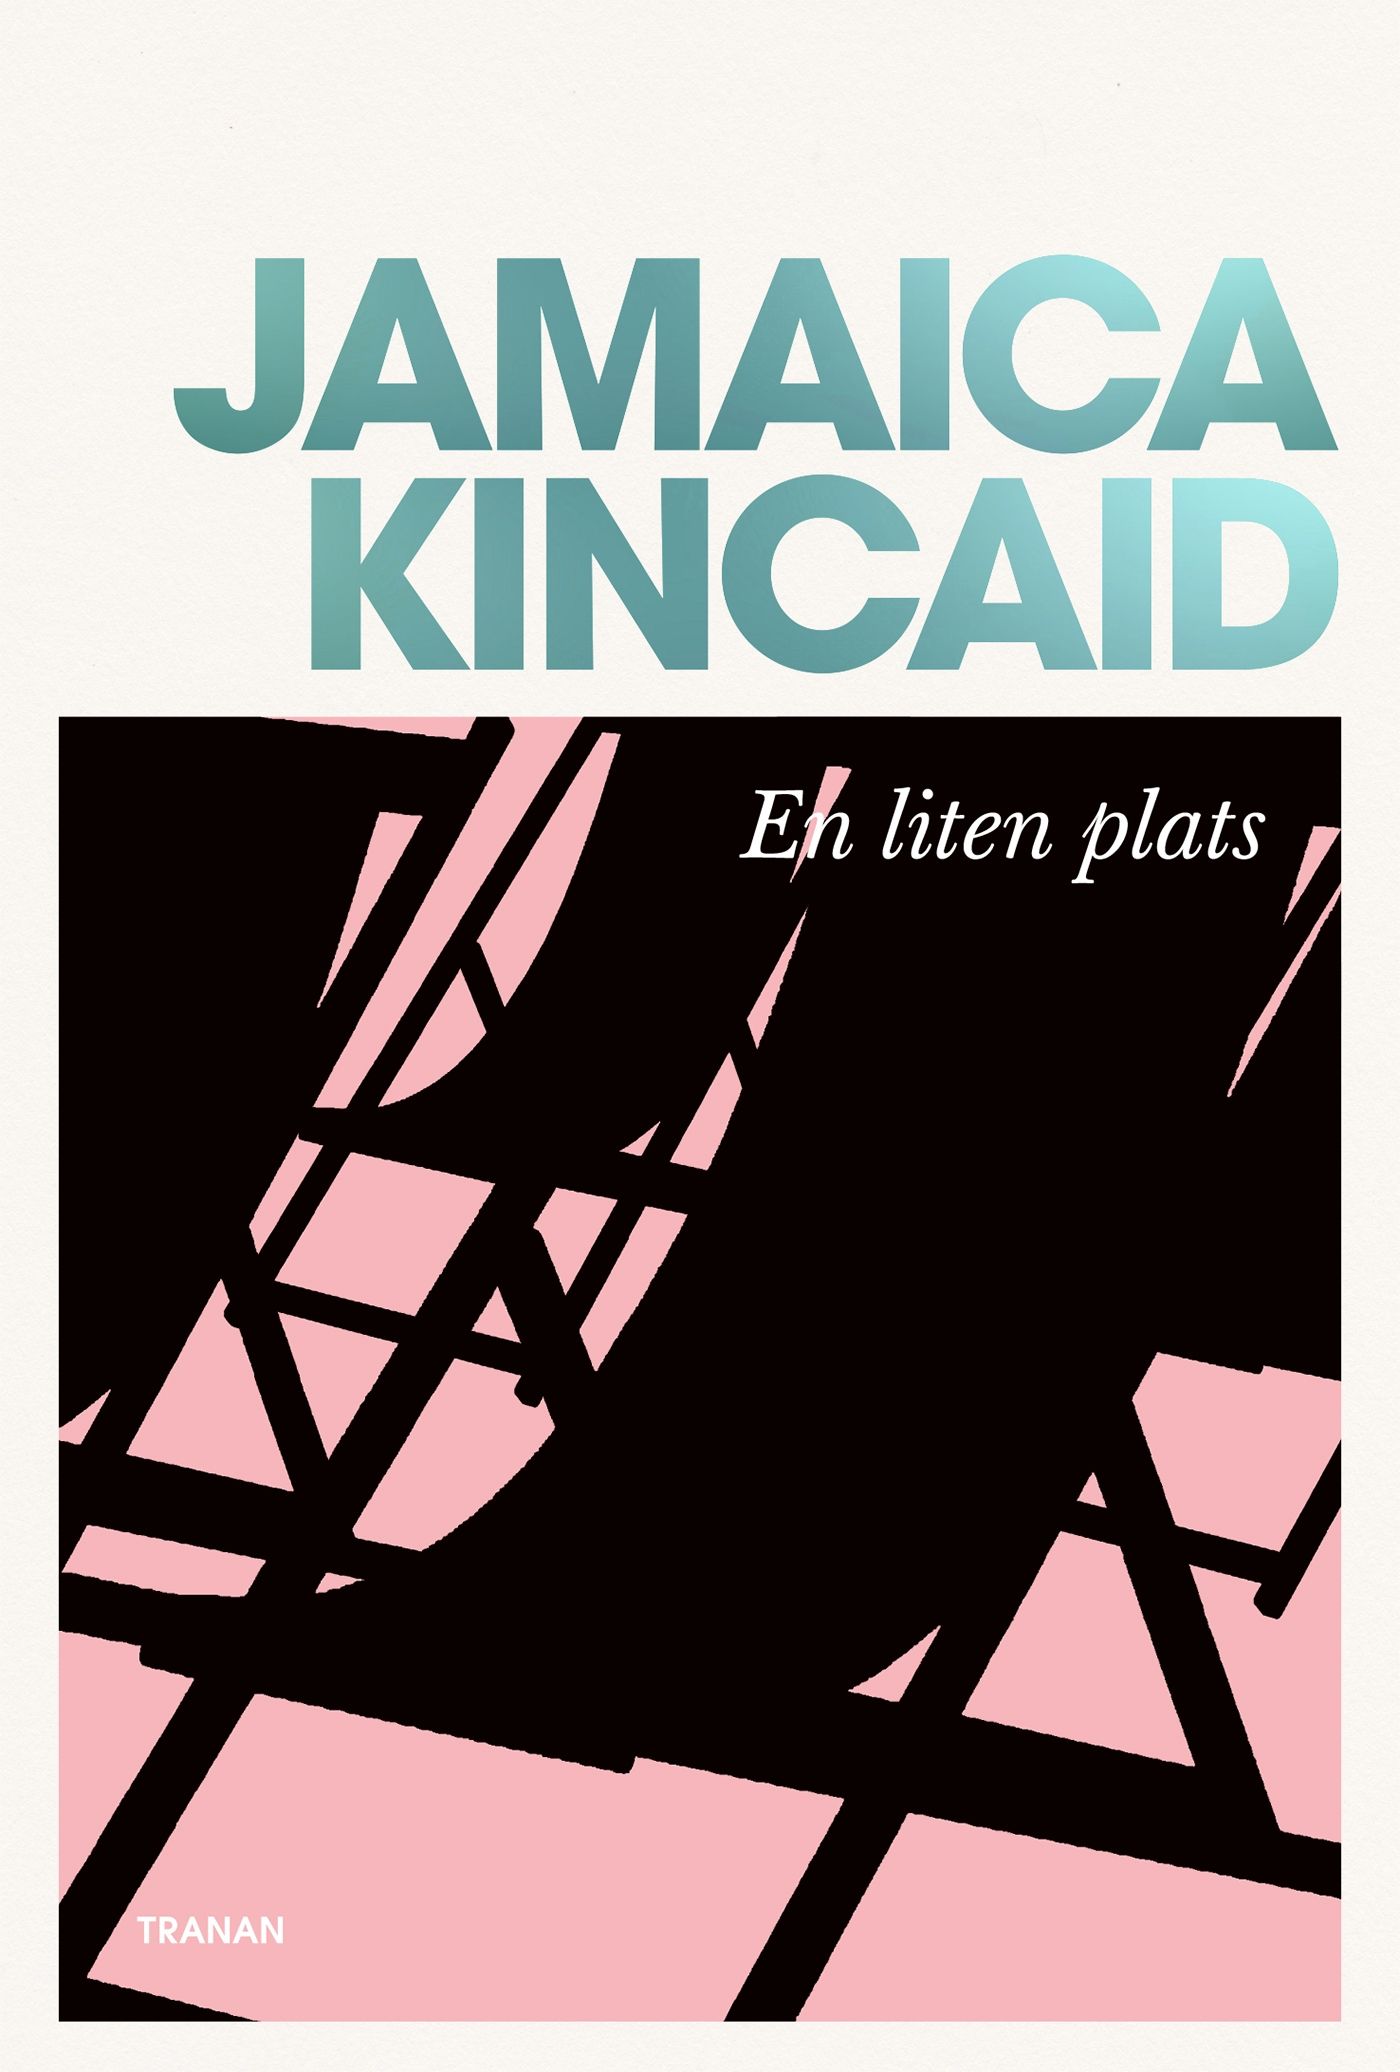 En liten plats, eBook by Jamaica Kincaid